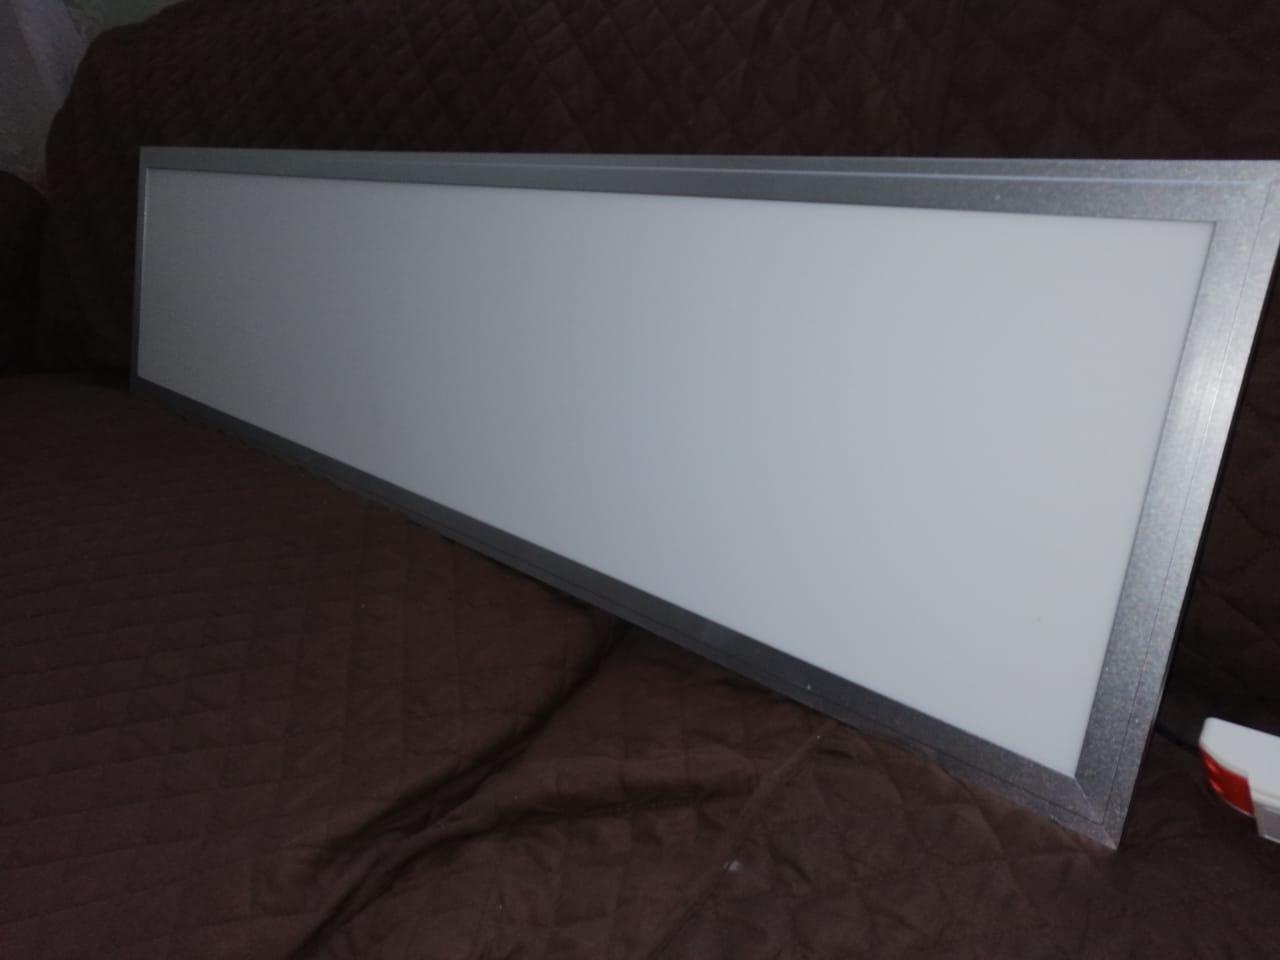 Panel delgado colgante de LED 45 W 30 x 120 cm luz neutra, Luminarios  Colgantes y Gabinetes, 49725